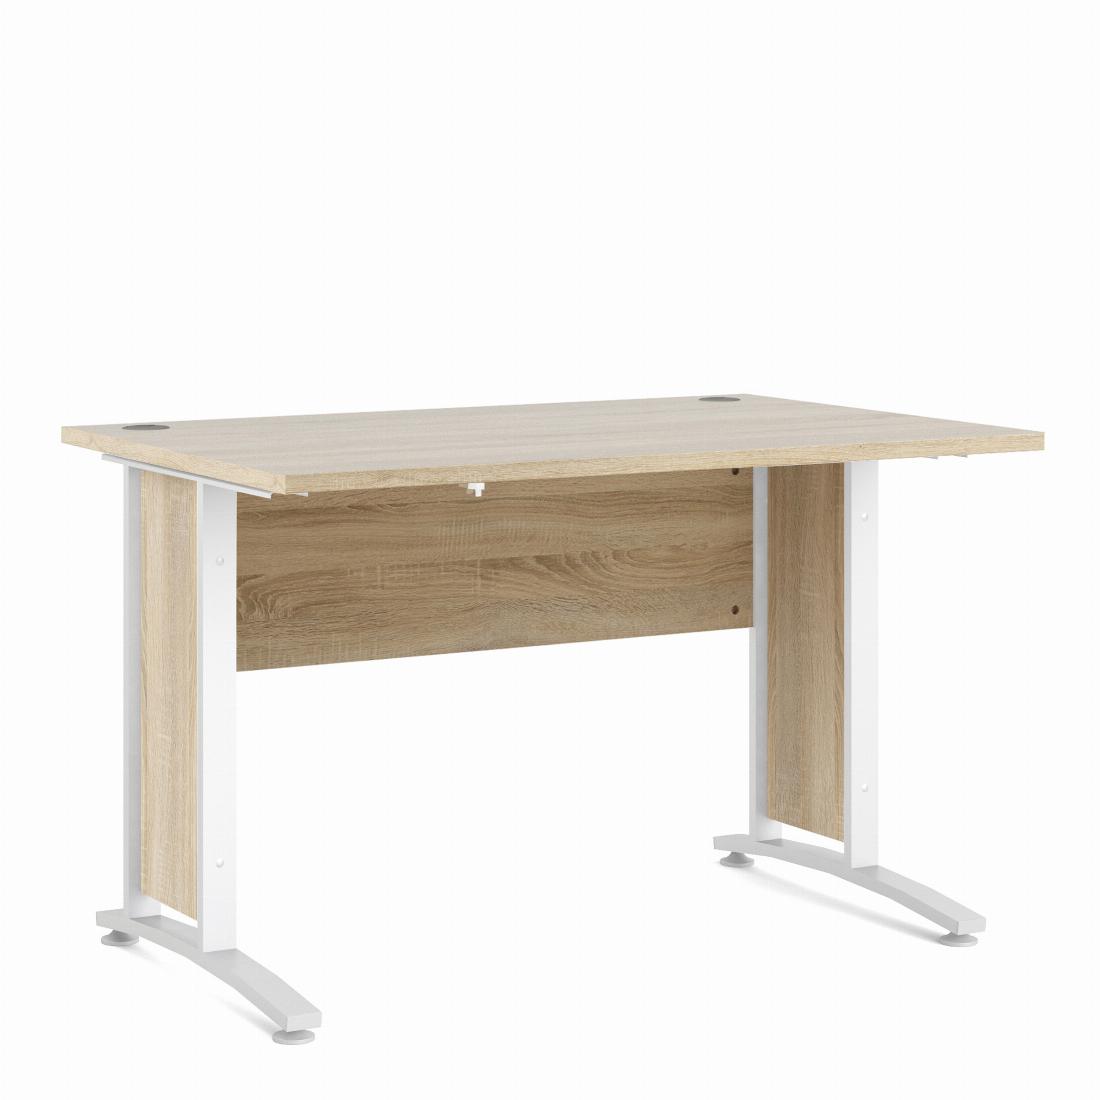 Prima Desk 120 cm in Oak with White legs